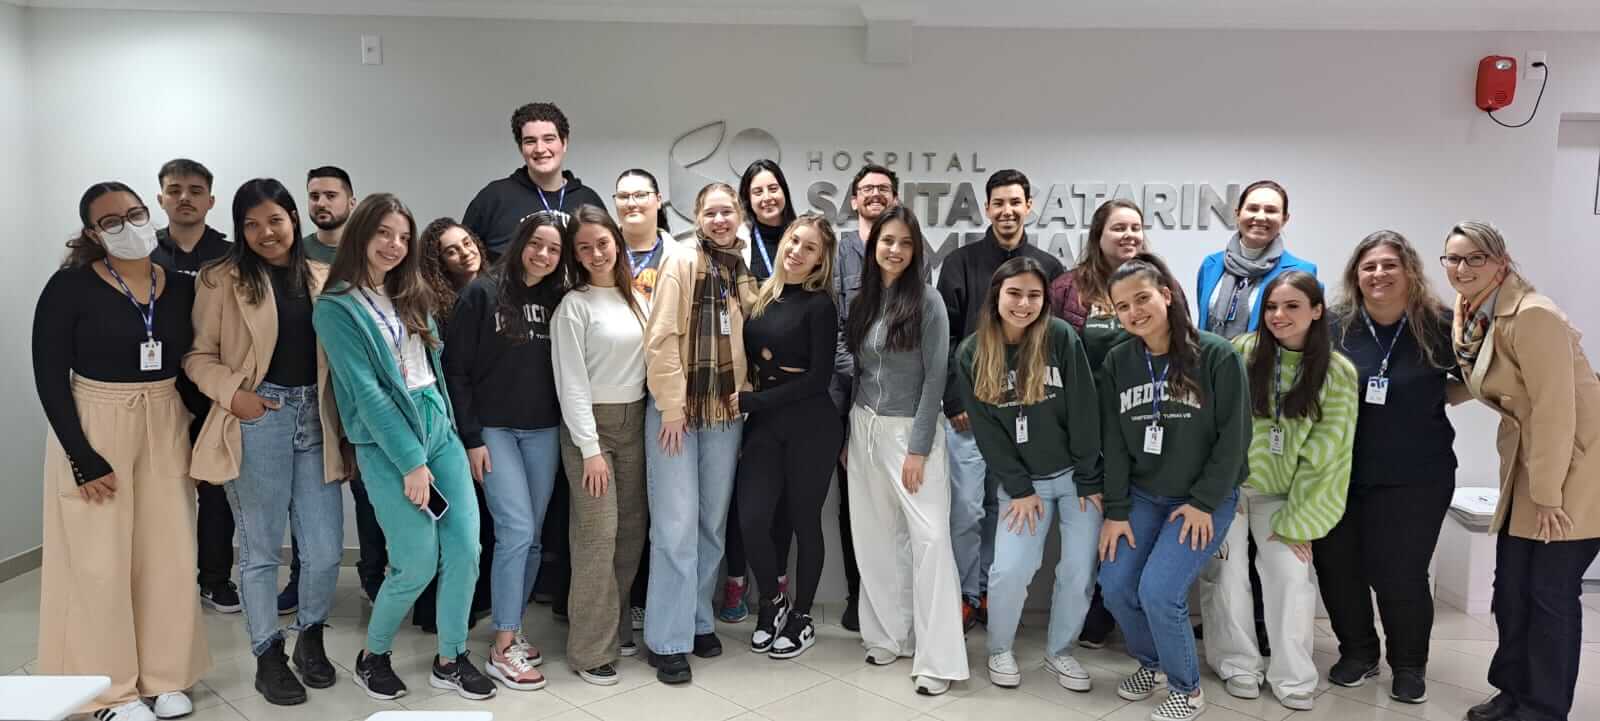 Em visita técnica ao Hospital Santa Catarina acadêmicos de Medicina da UNIFEBE conhecem programas ambientais da instituição